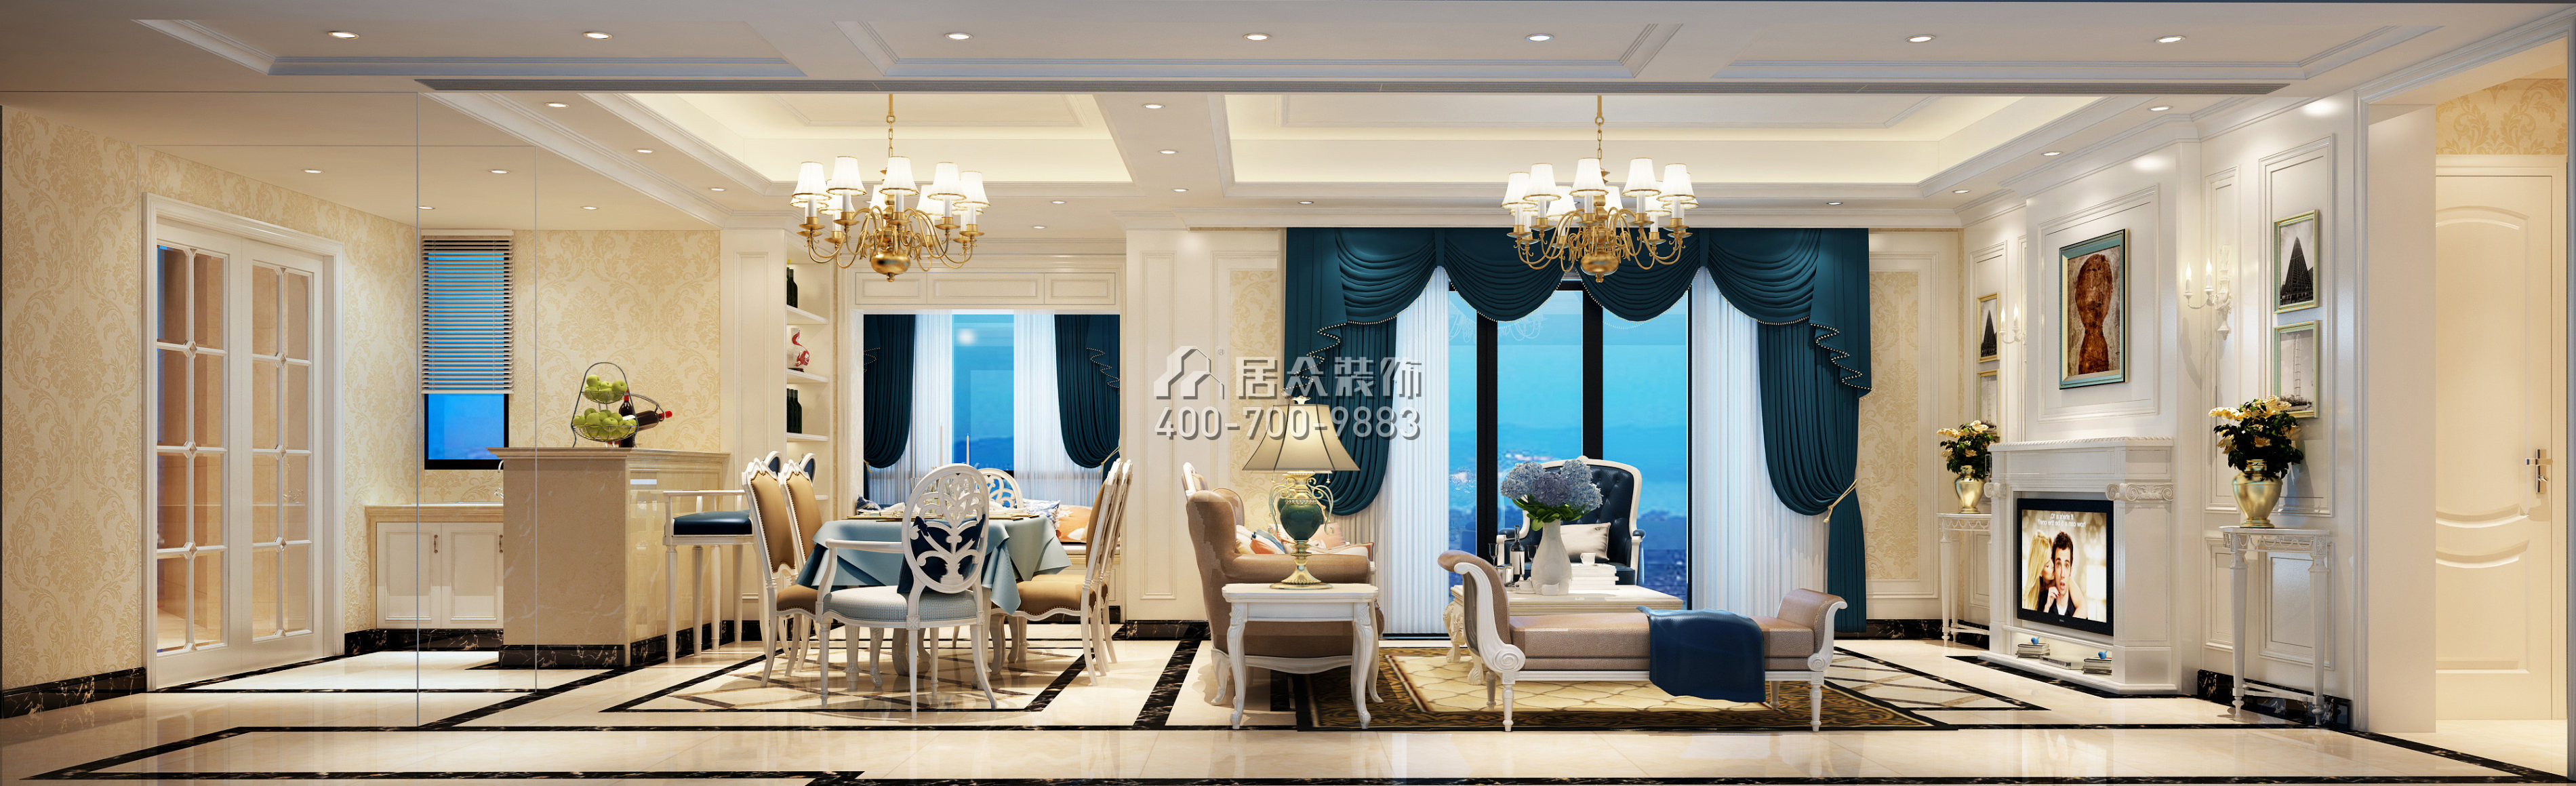 虹湾花园160平方米欧式风格平层户型客厅装修效果图